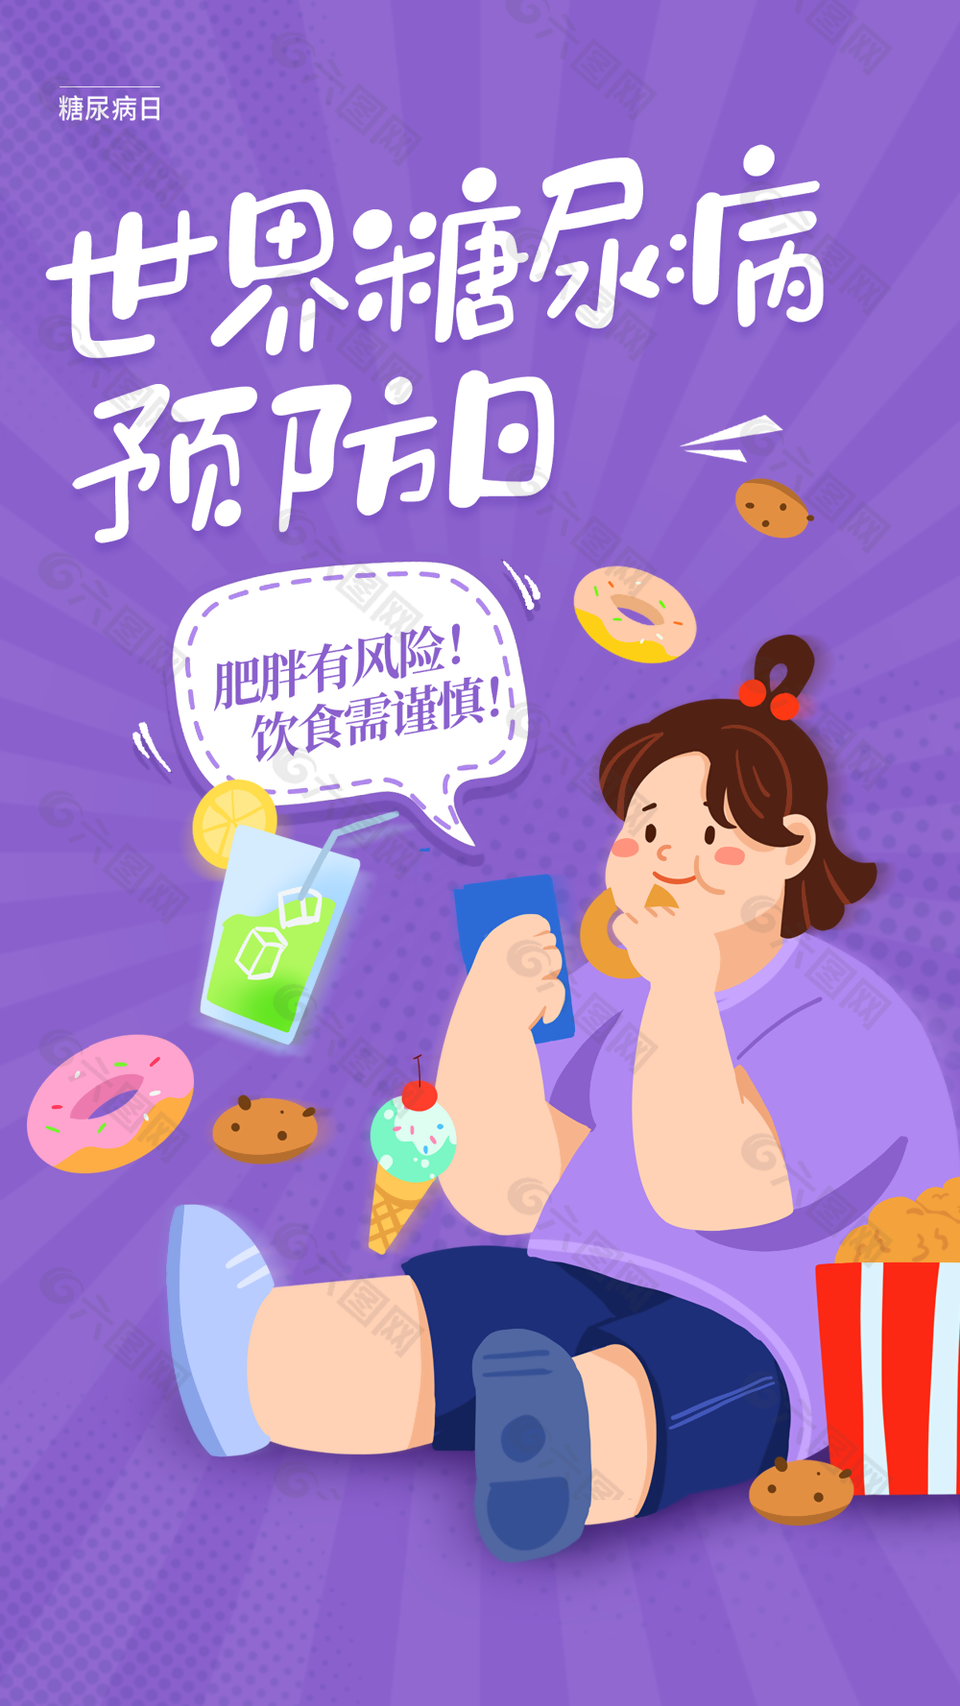 精美简约卡通世界糖尿病日海报图设计